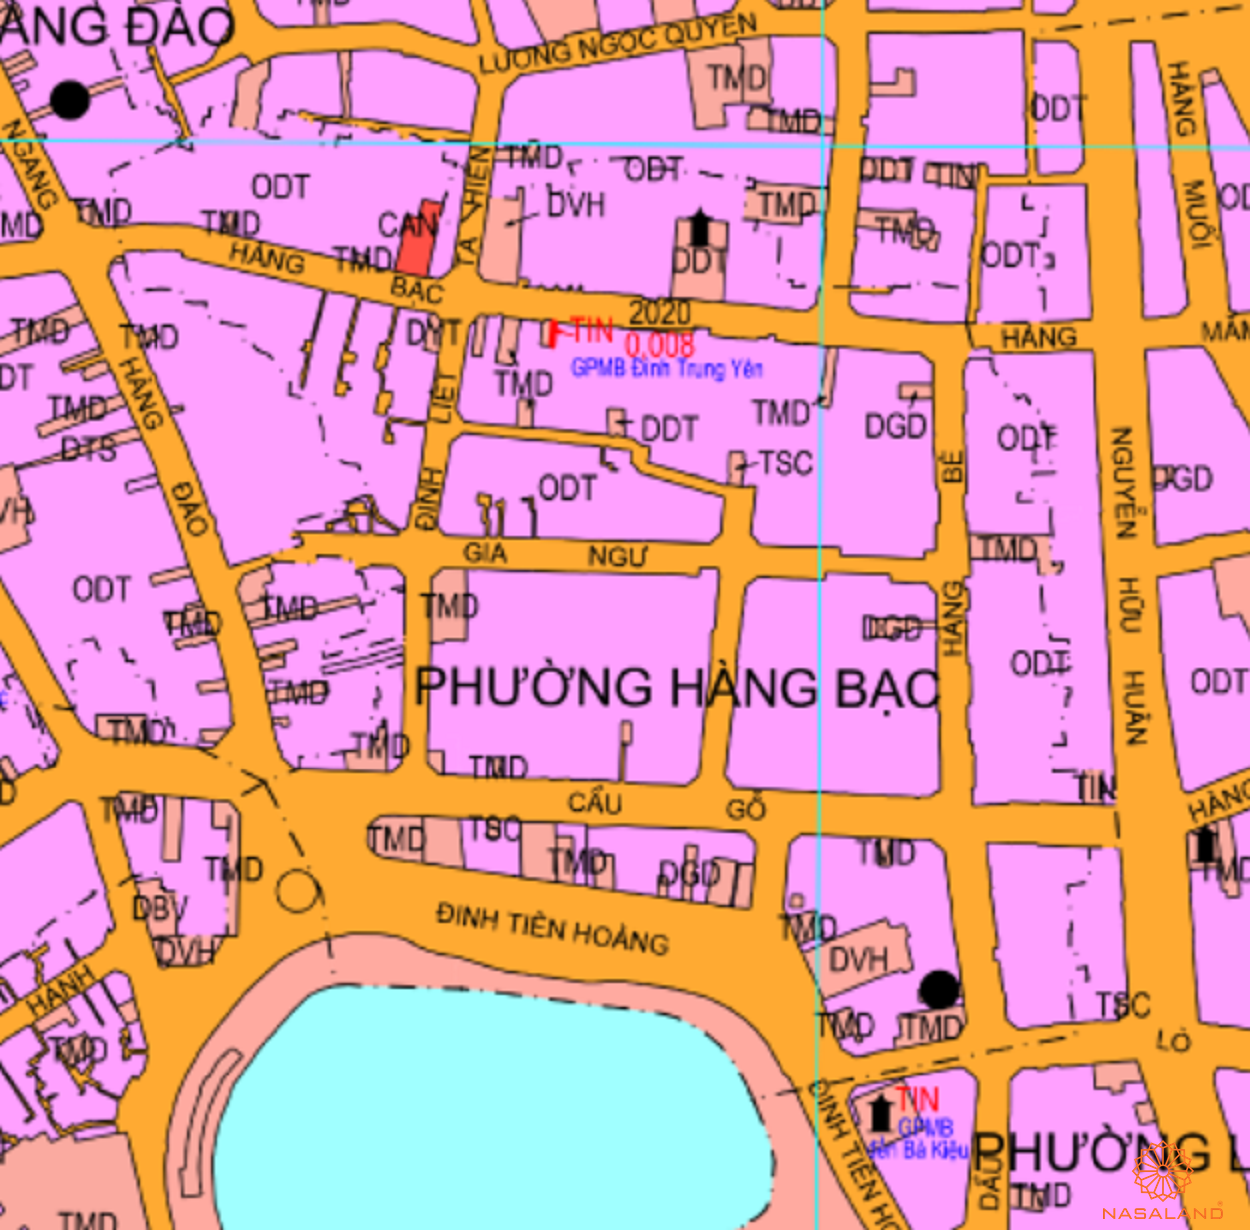 Bản đồ quy hoạch sử dụng đất Phường Hàng Bạc theo bản đồ quy hoạch sử dụng đất năm 2020 Quận Hoàn Kiếm, Thành phố Hà Nội.